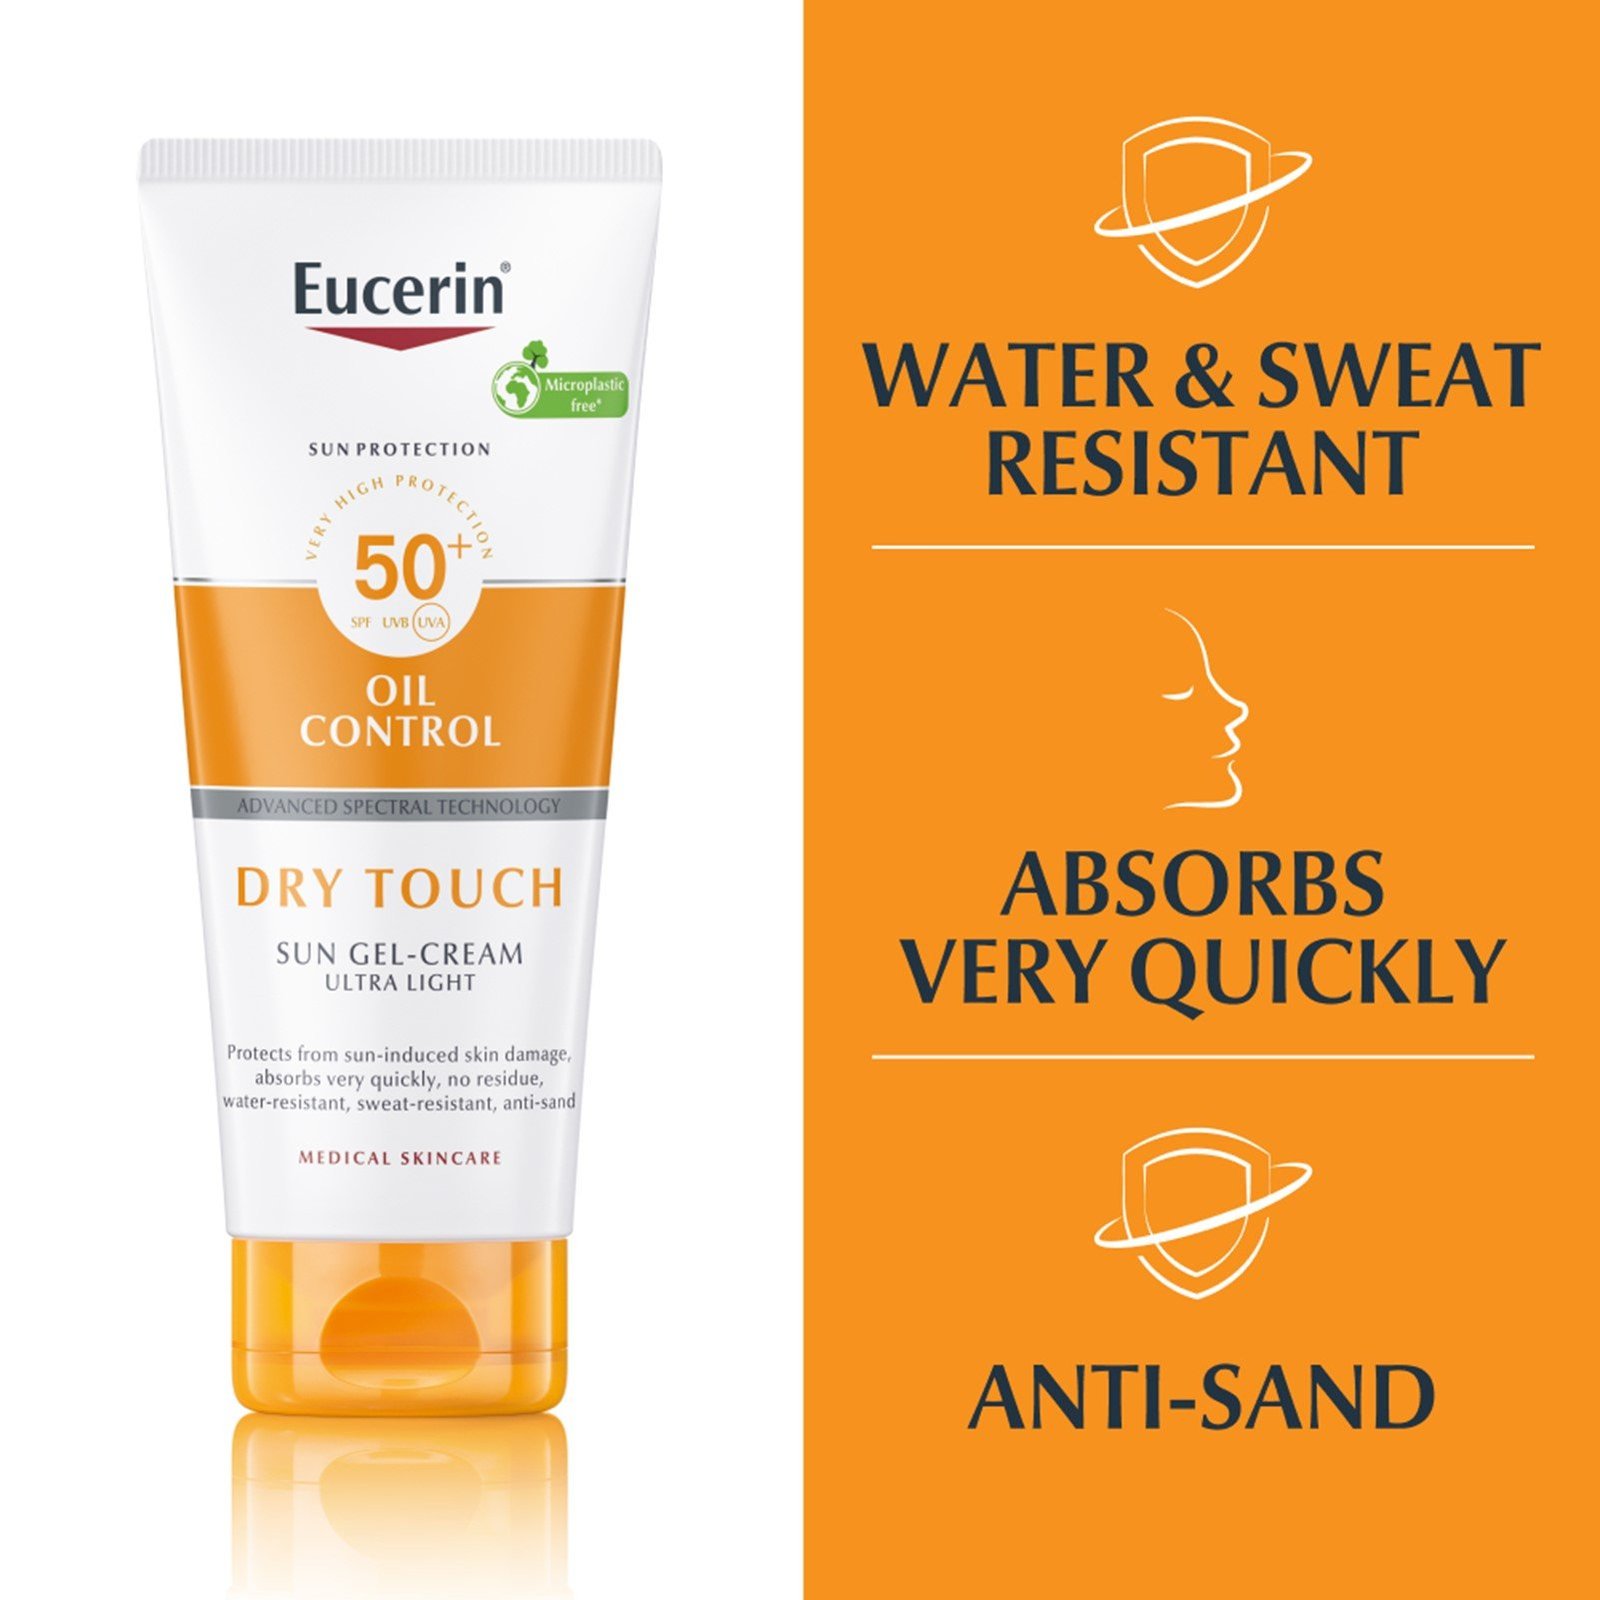 Eucerin Oil Control Sun Gel Cream Toque Seco Corporal SPF 50+ x 200mL